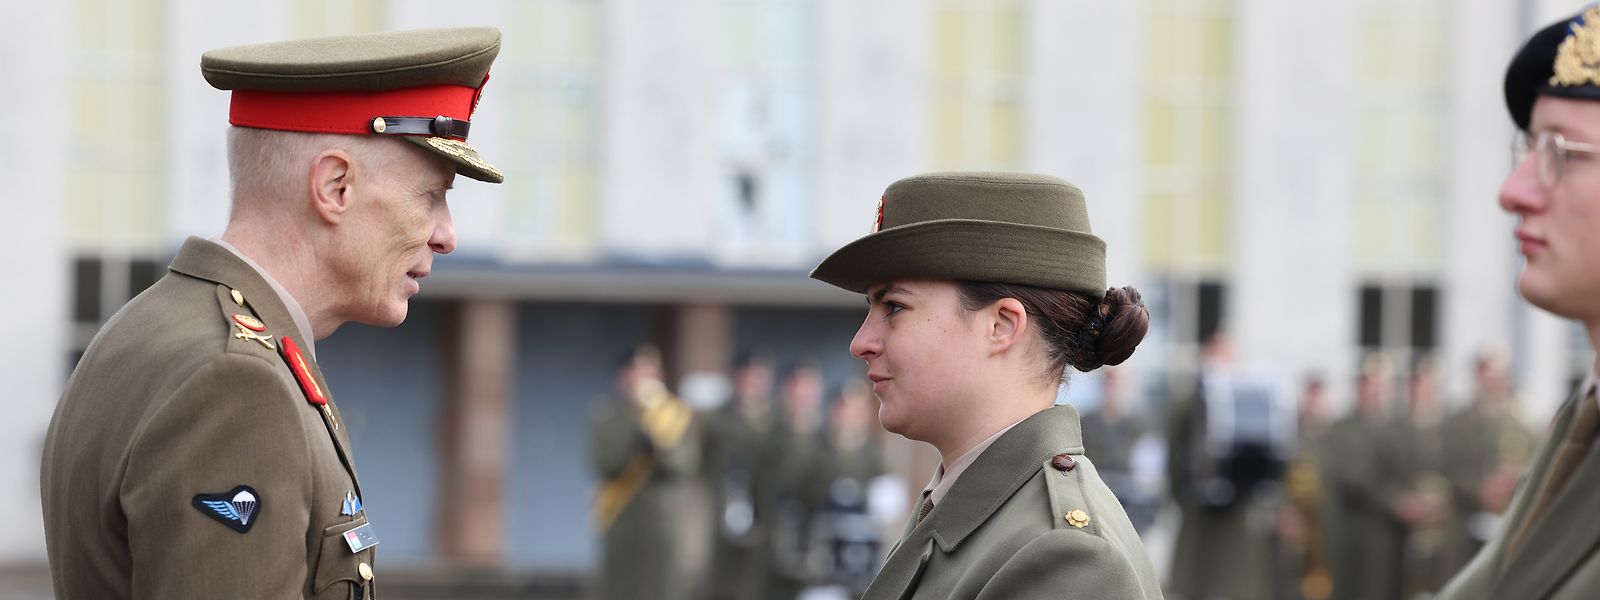 Die Armee hat zur Martinsfeier in Diekirch eingeladen. Vier junge Menschen wurden für ihre herausragenden Leistungen mit dem Ehrendolch gewürdigt.